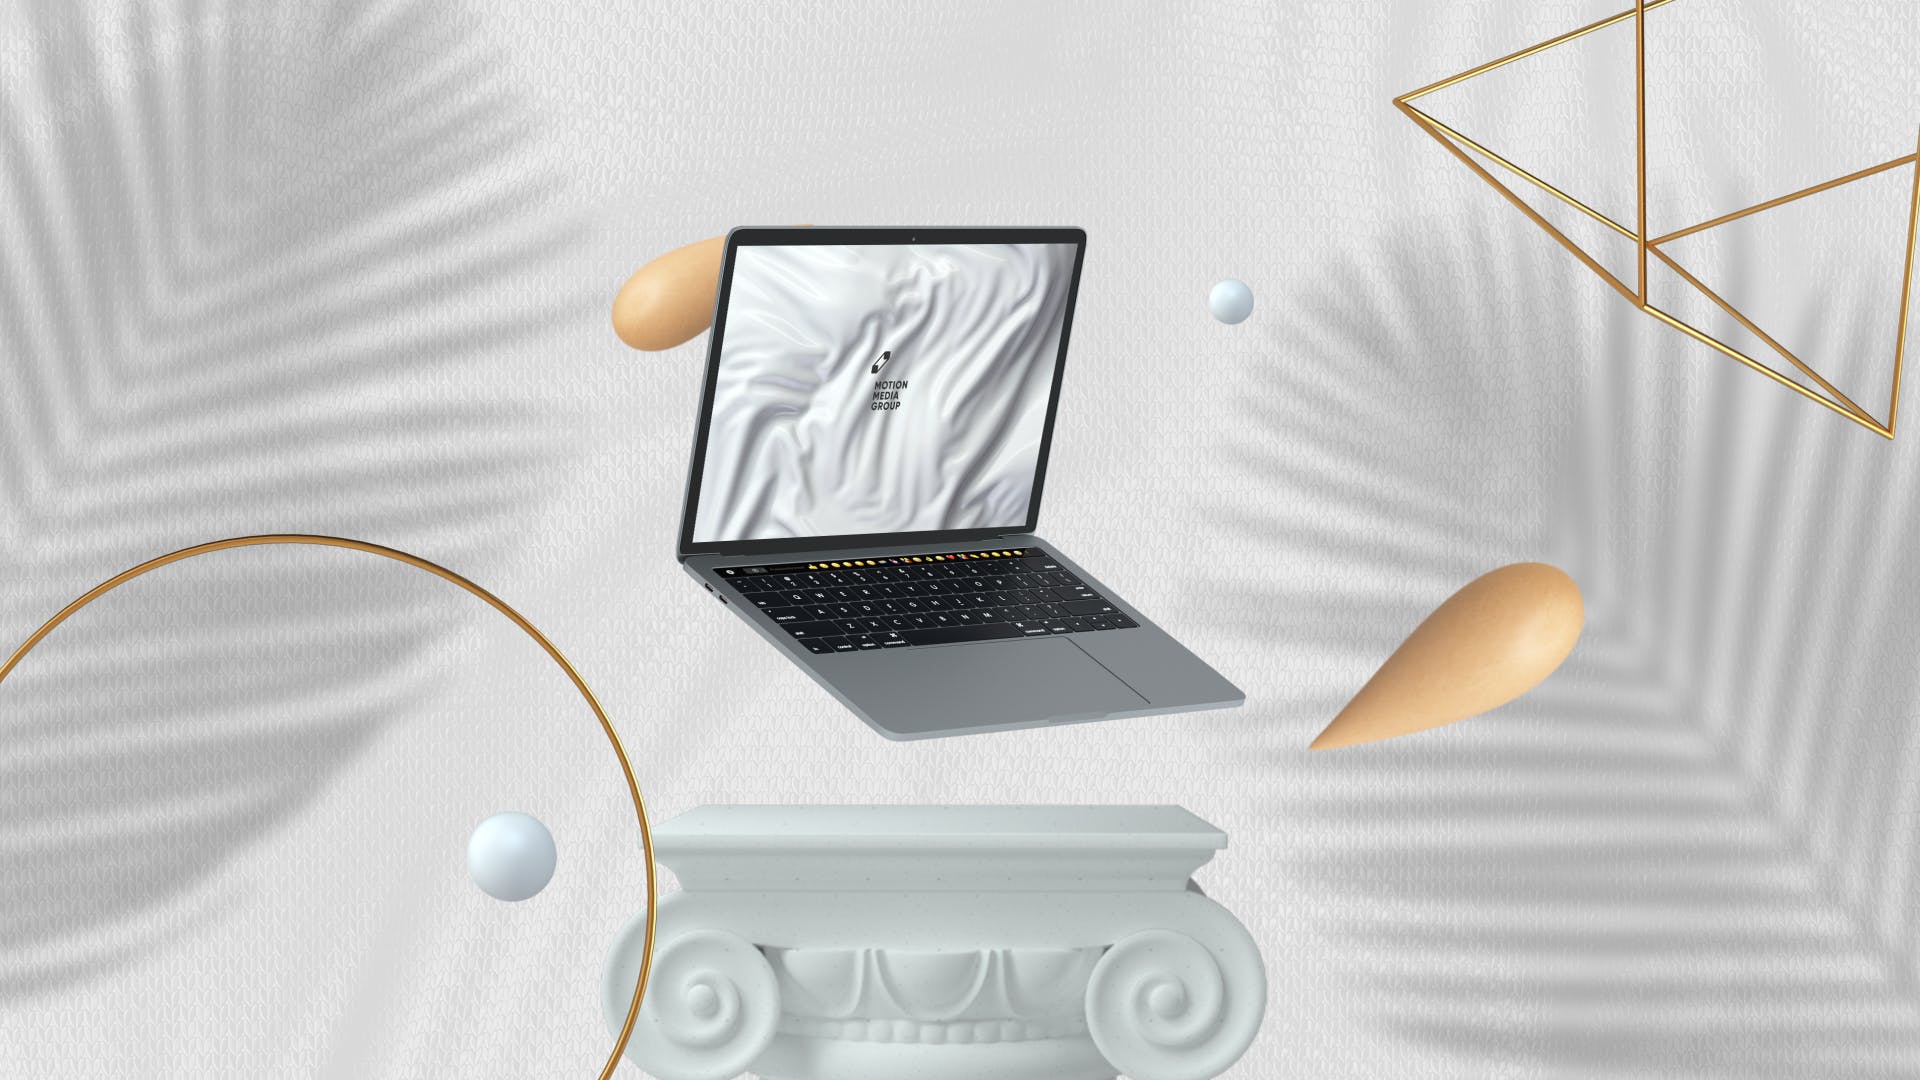 优雅时尚风格3D立体风格笔记本电脑屏幕预览蚂蚁素材精选样机 10 Light Laptop Mockups插图(8)